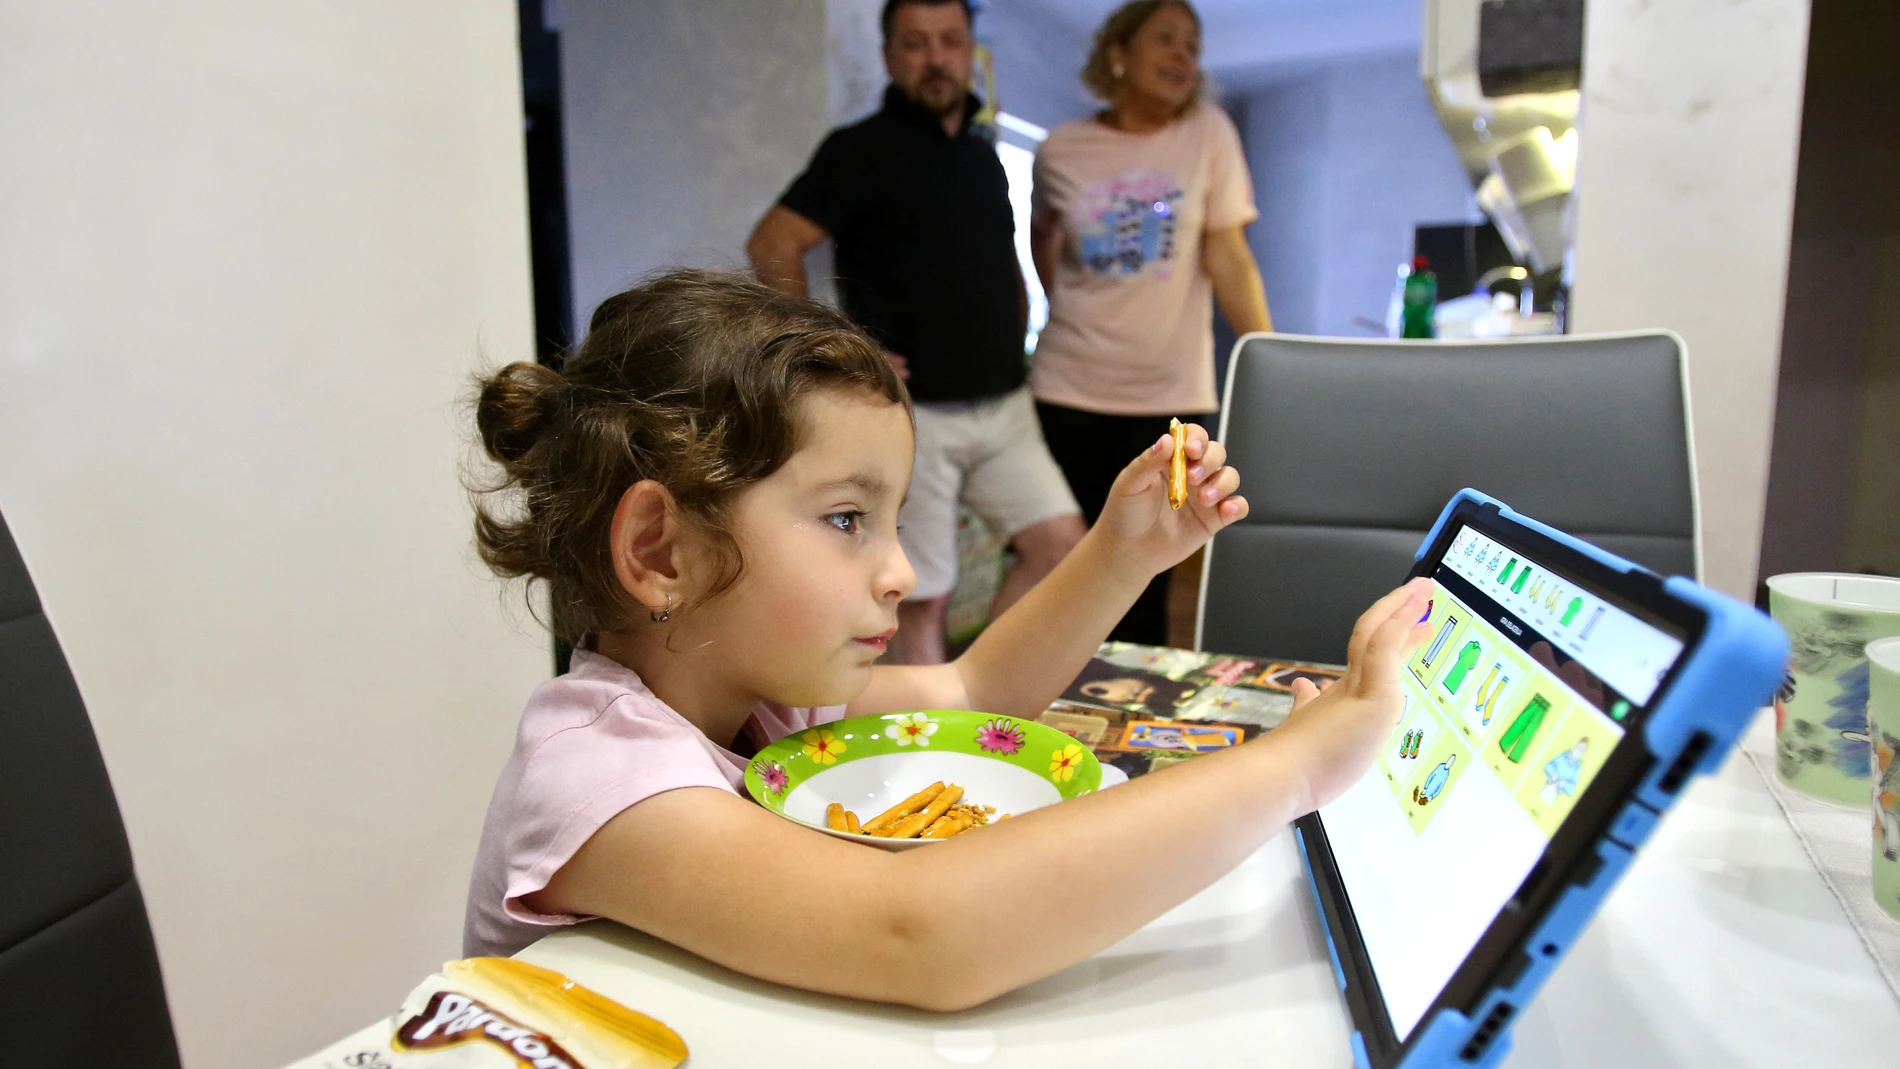 La terapeuta del habla Natasa Sreckovic Milenkovic visita a la niña Srna Staic para ayudarle a dominar la comunicación verbal con el apoyo de una tablet.© UNICEF/UN0352698/VAS (Foto de ARCHIVO)26/09/2020